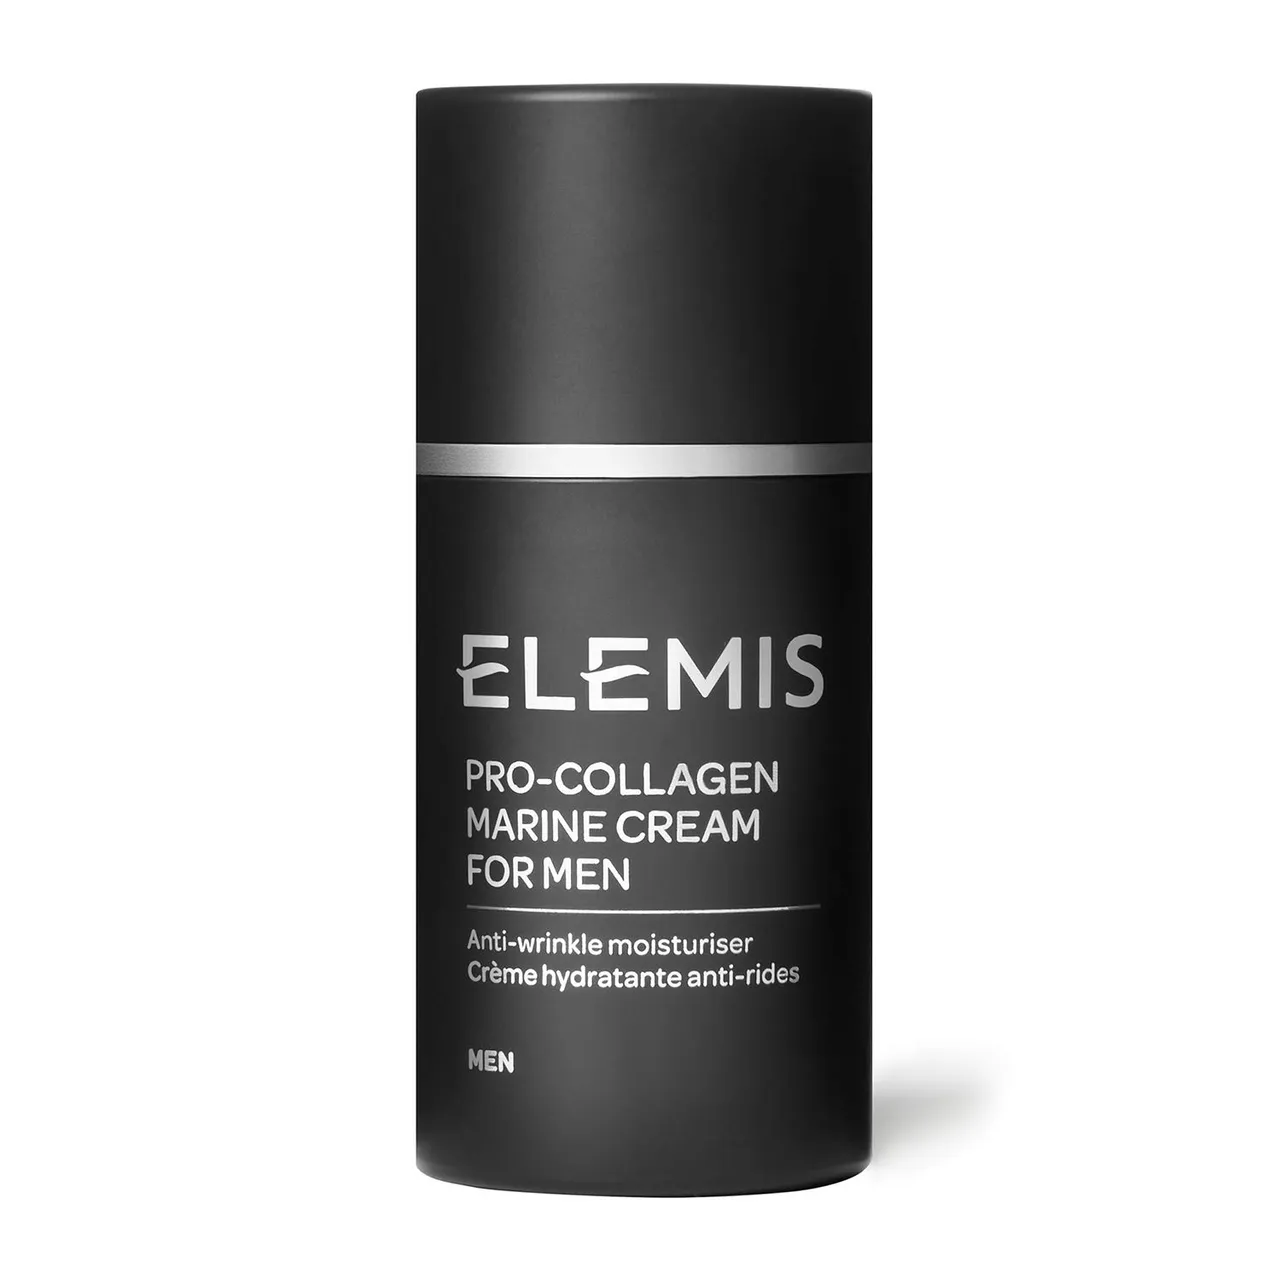 ELEMIS Pro-Collagen Anti-Wrinkle Moisturiser for Men